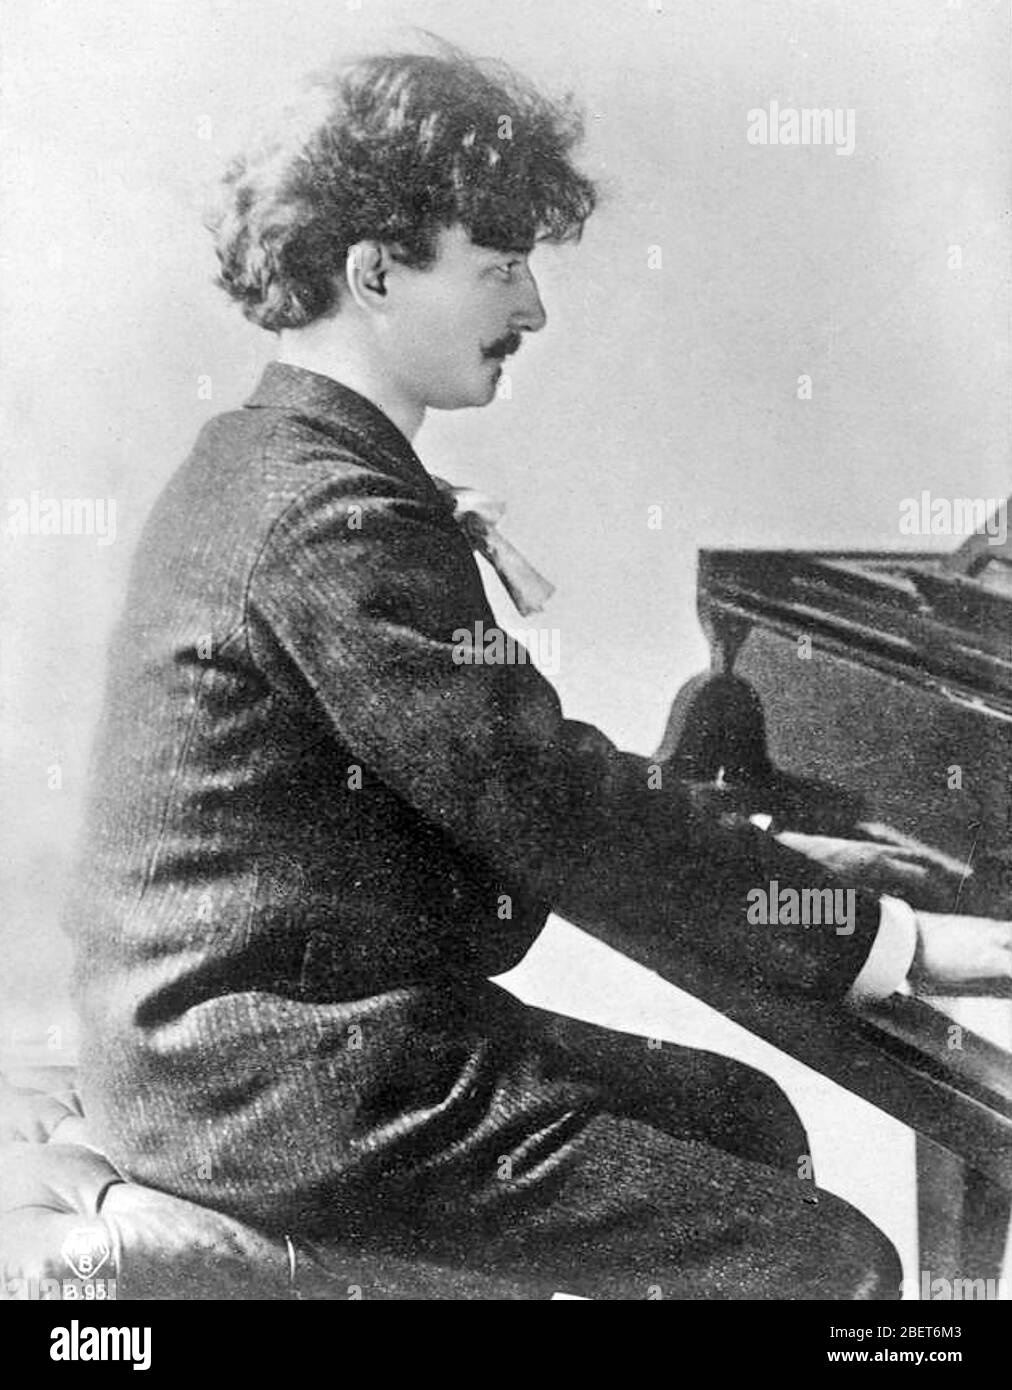 IGNACY JAN PADEREWSKI (1860-1941) pianiste polonais vers 1885 Banque D'Images